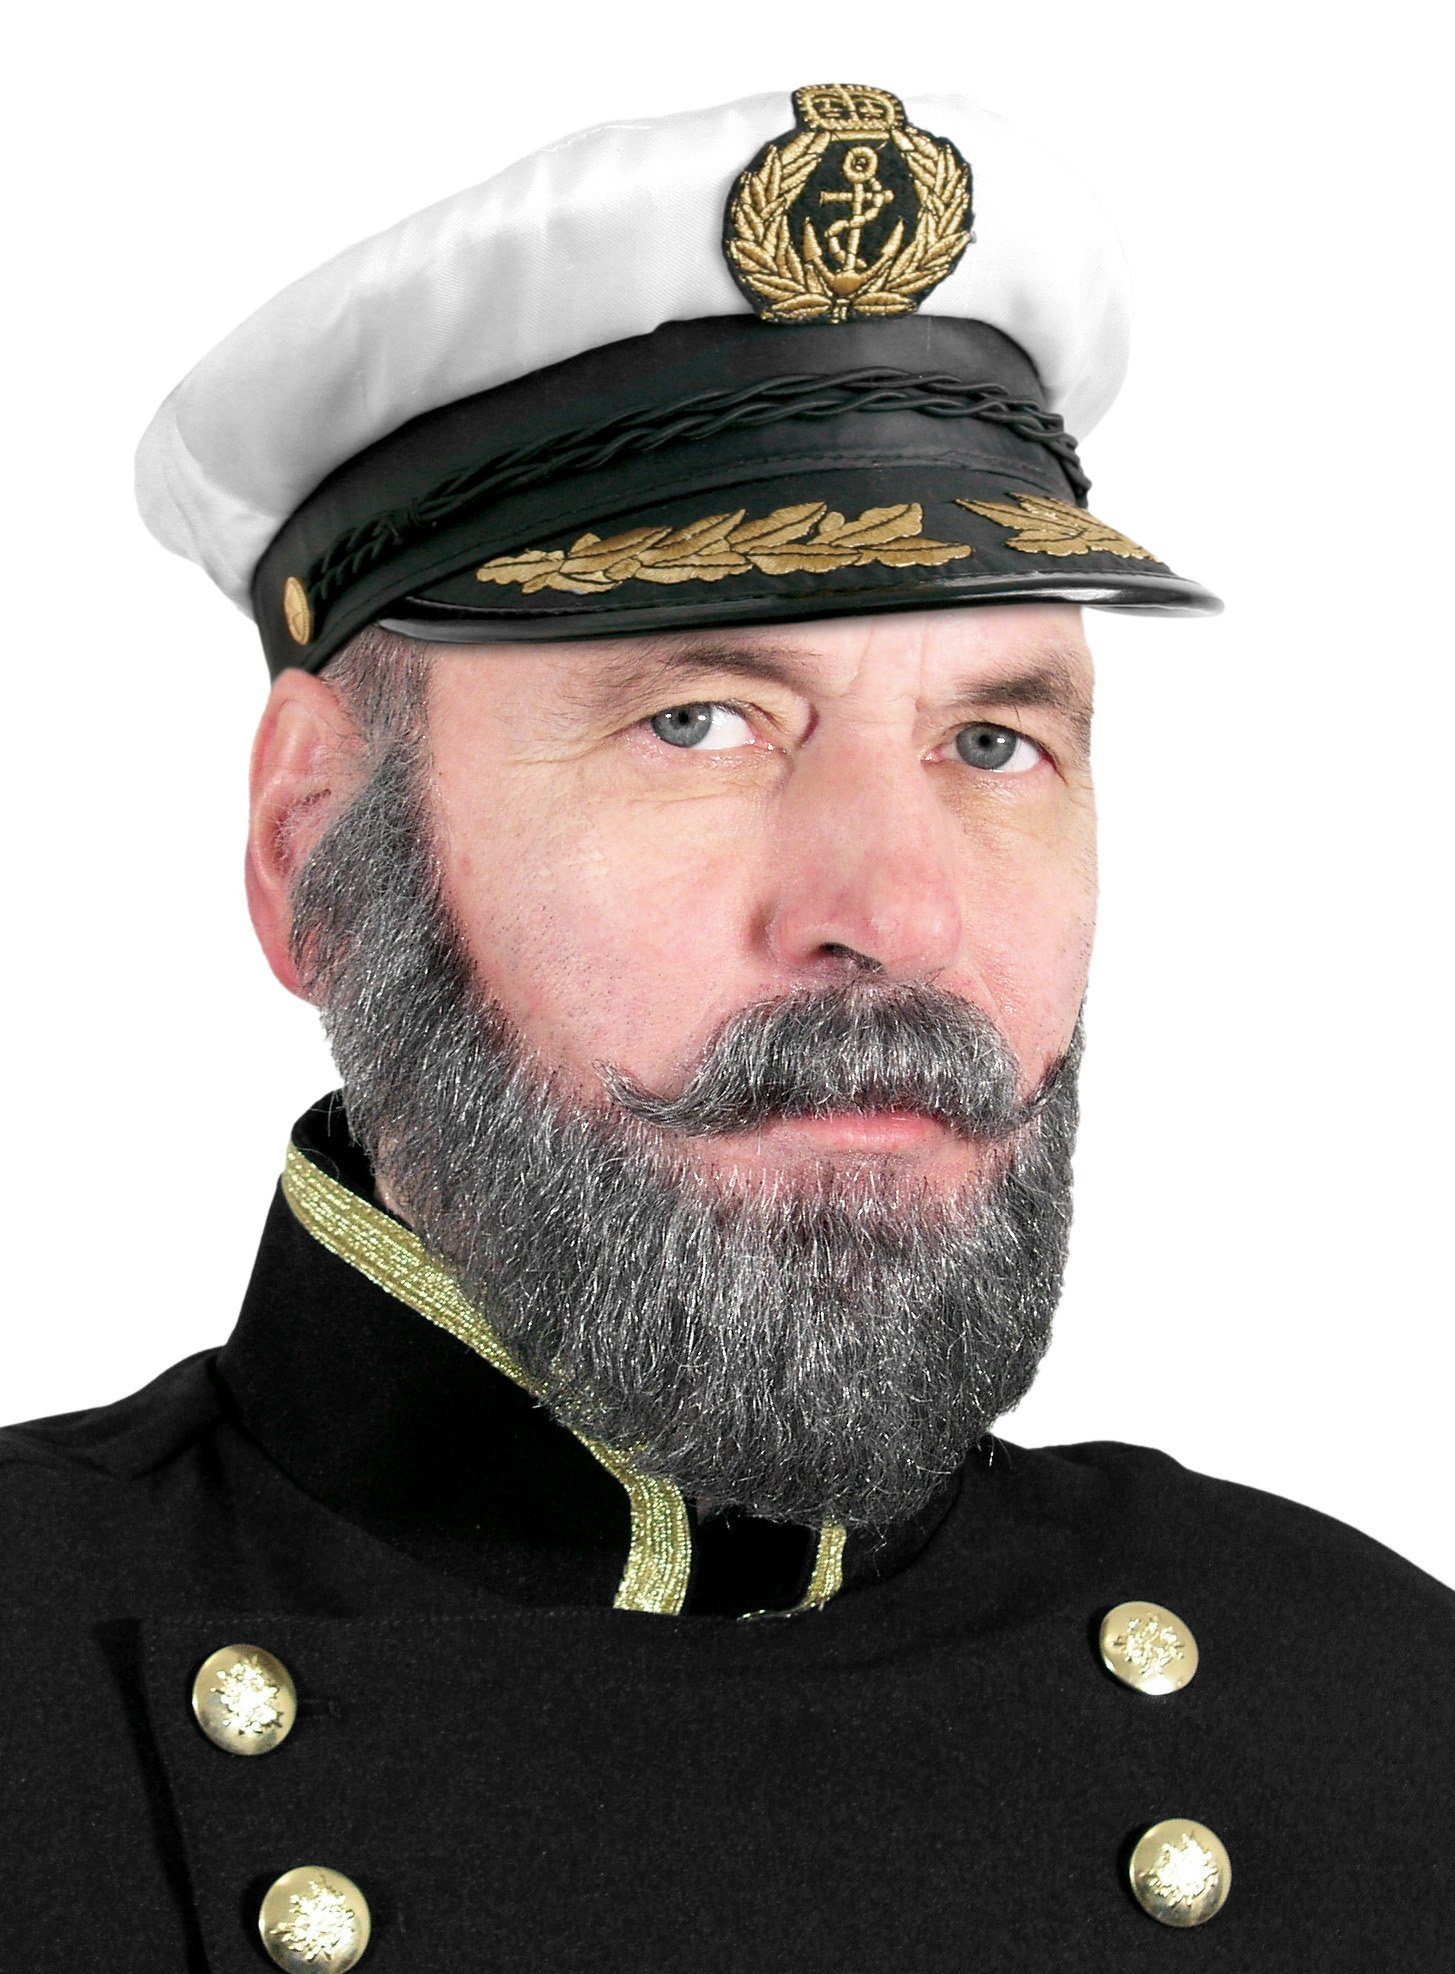 Boland Kostüm Kapitänsmütze Deluxe, Größenverstellbare Kapitänsmütze für den gestandenen Seemann